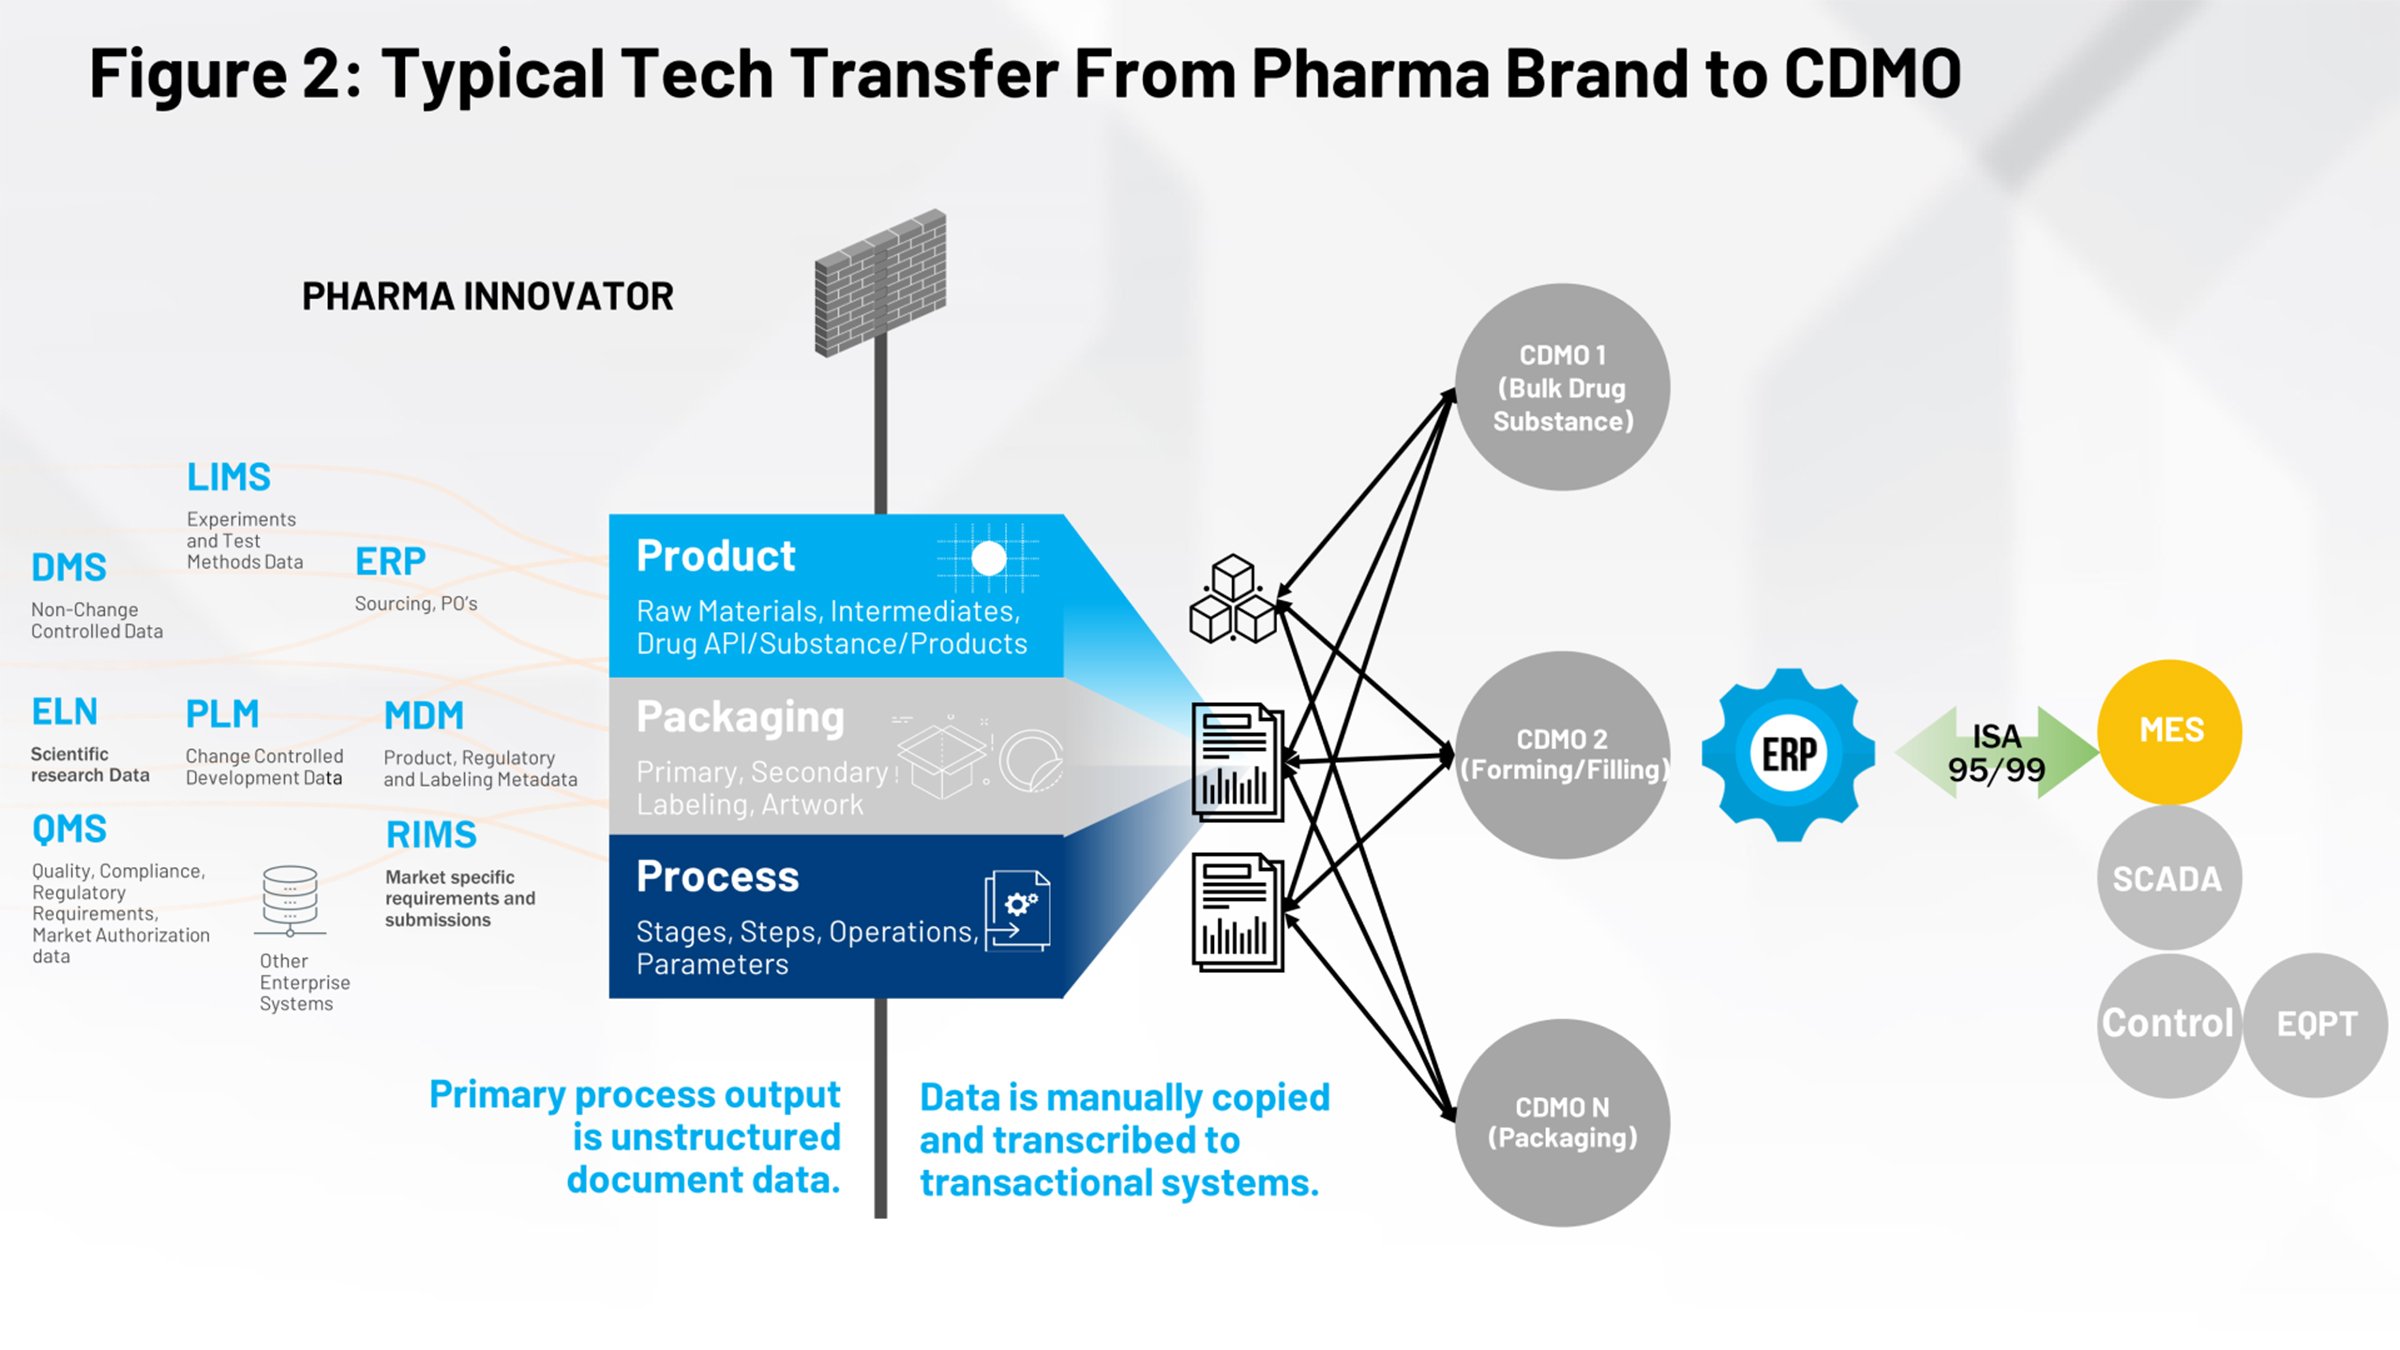 图 2：从制药品牌到 CDMO 的典型技术转移